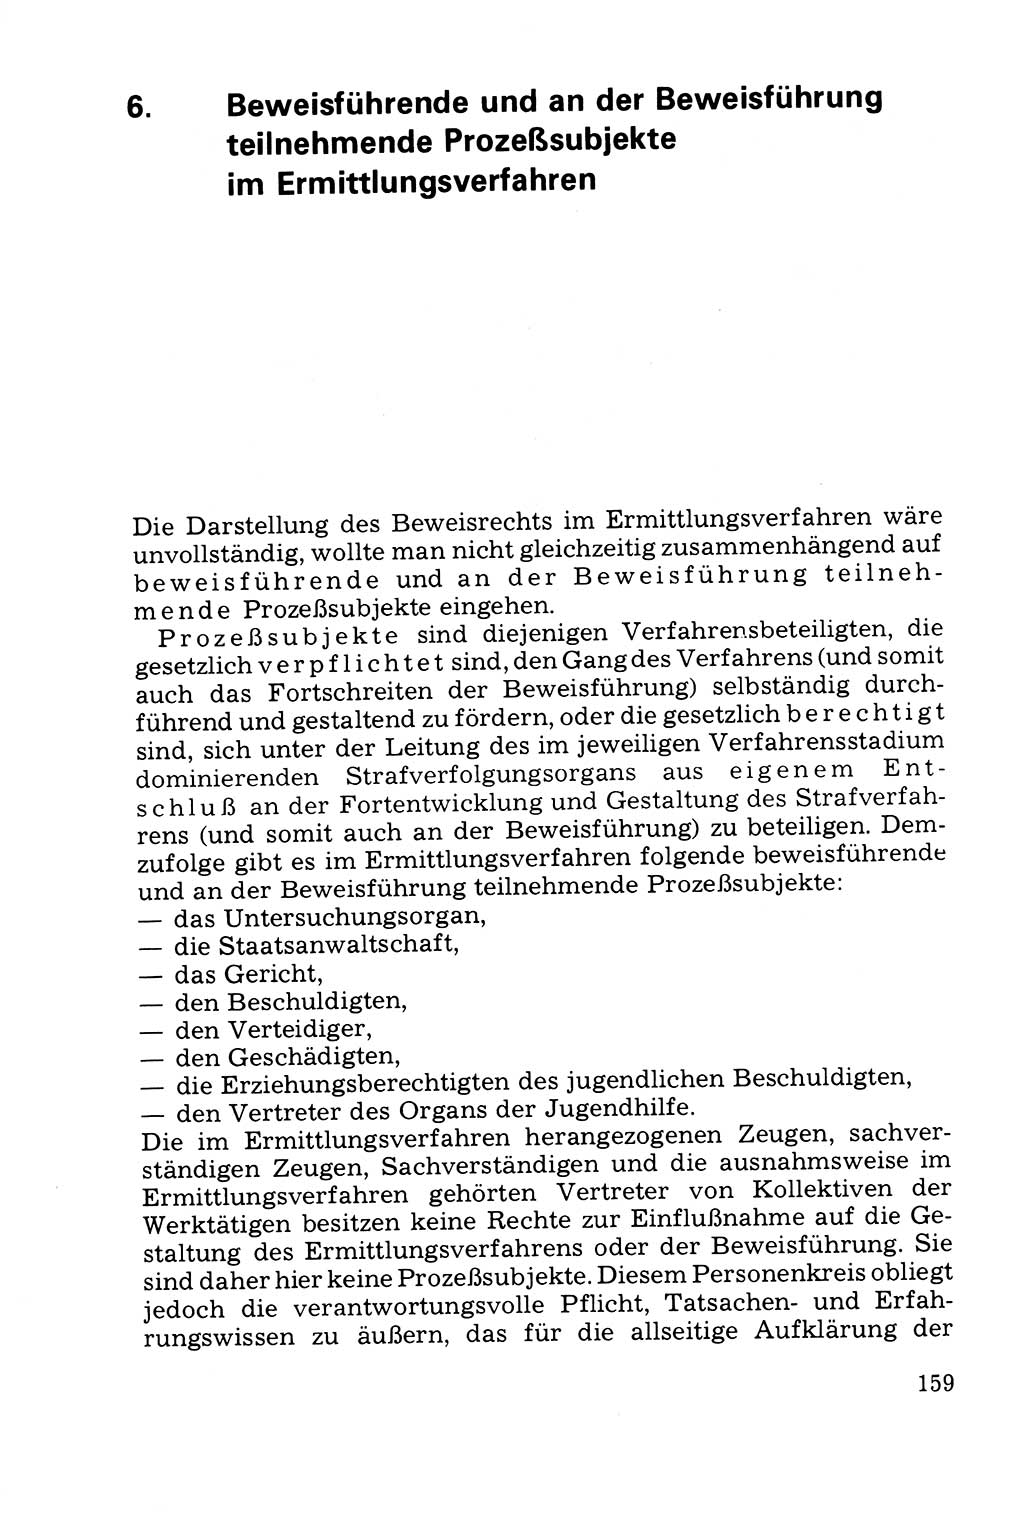 Grundfragen der Beweisführung im Ermittlungsverfahren [Deutsche Demokratische Republik (DDR)] 1980, Seite 159 (Bws.-Fhrg. EV DDR 1980, S. 159)